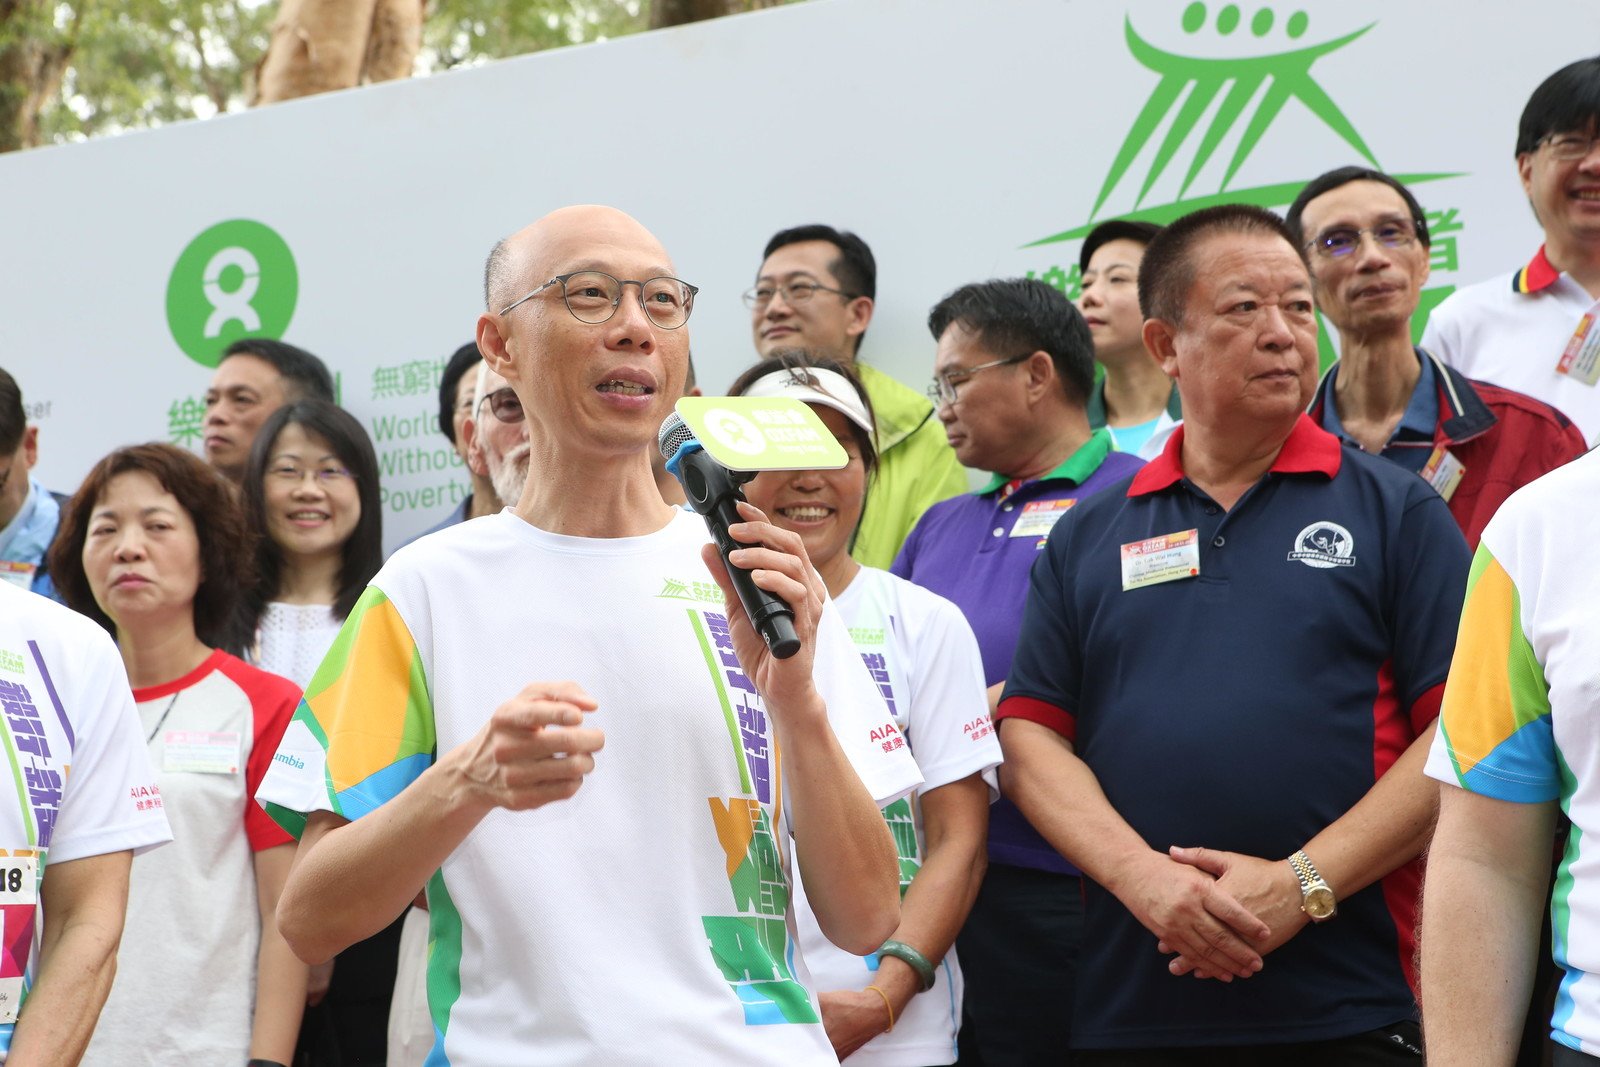 环境局局长黄锦星于「乐施毅行者2018」起步礼上为参加者打气。 